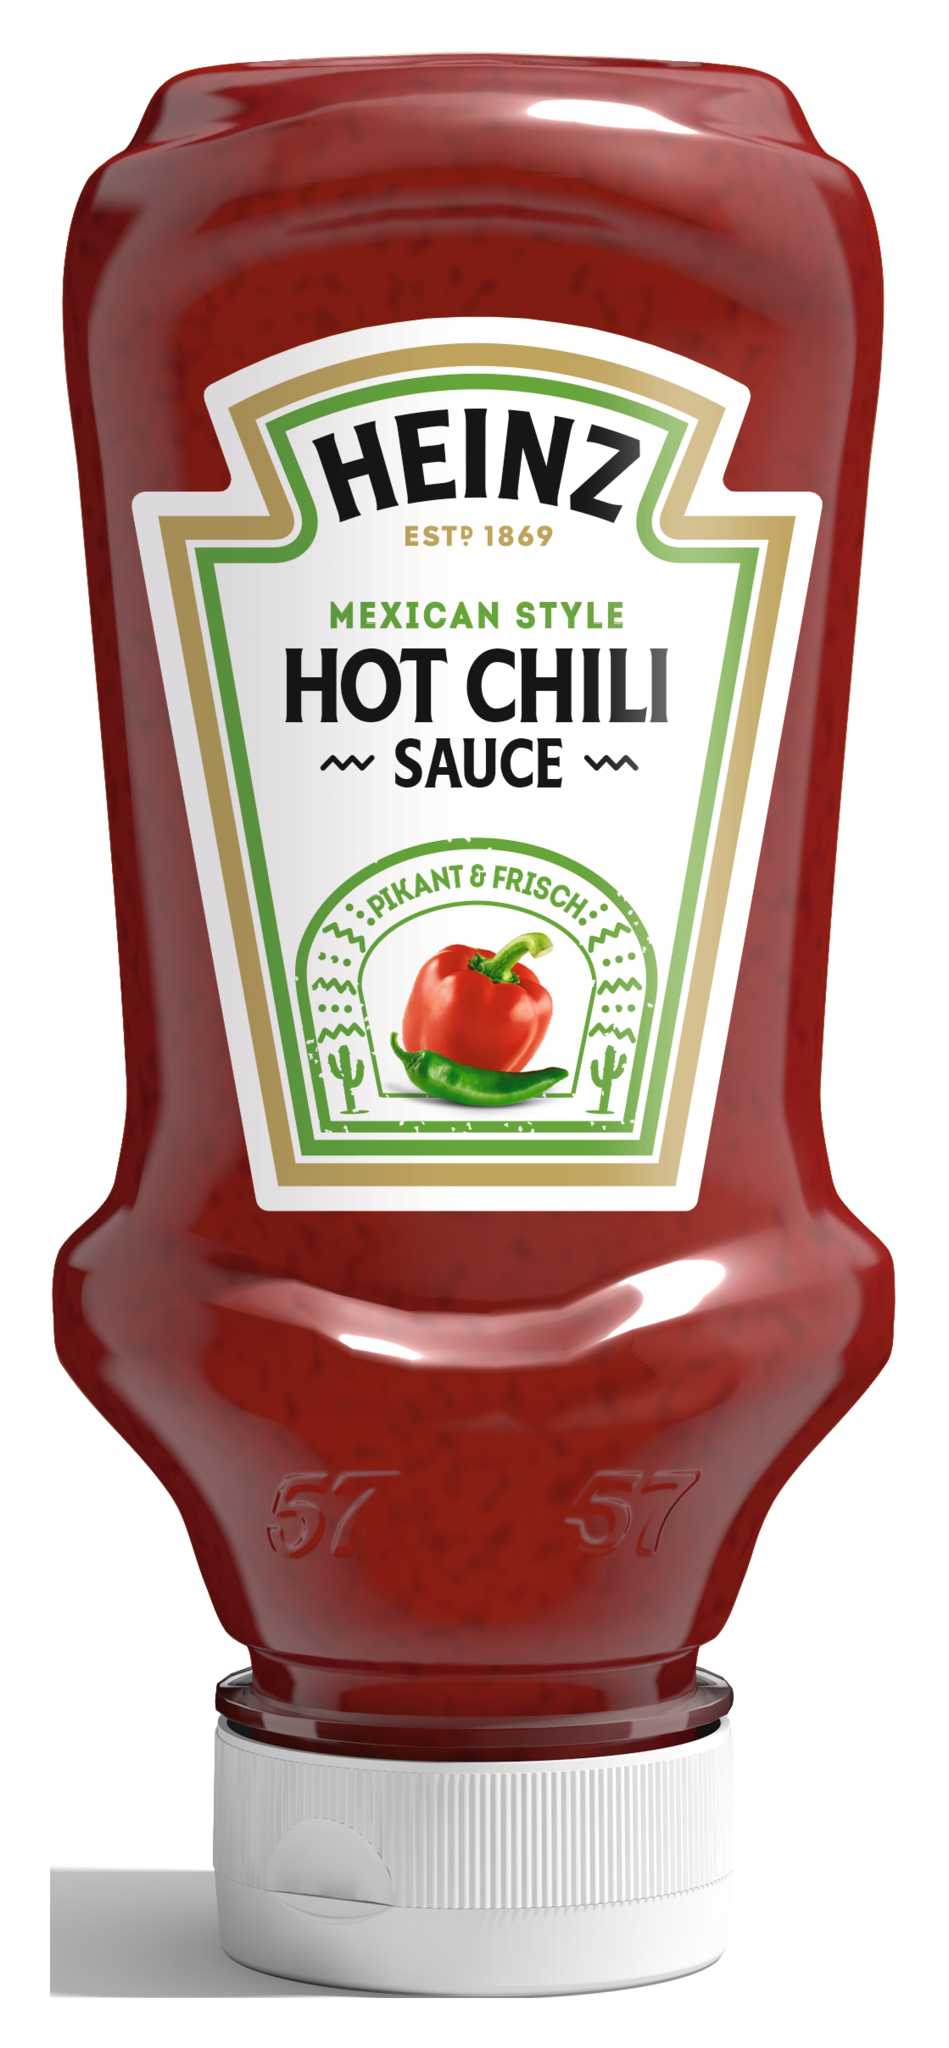  Hot Chili Sauce  mexican style 220ml Regiofrisch Ihr 